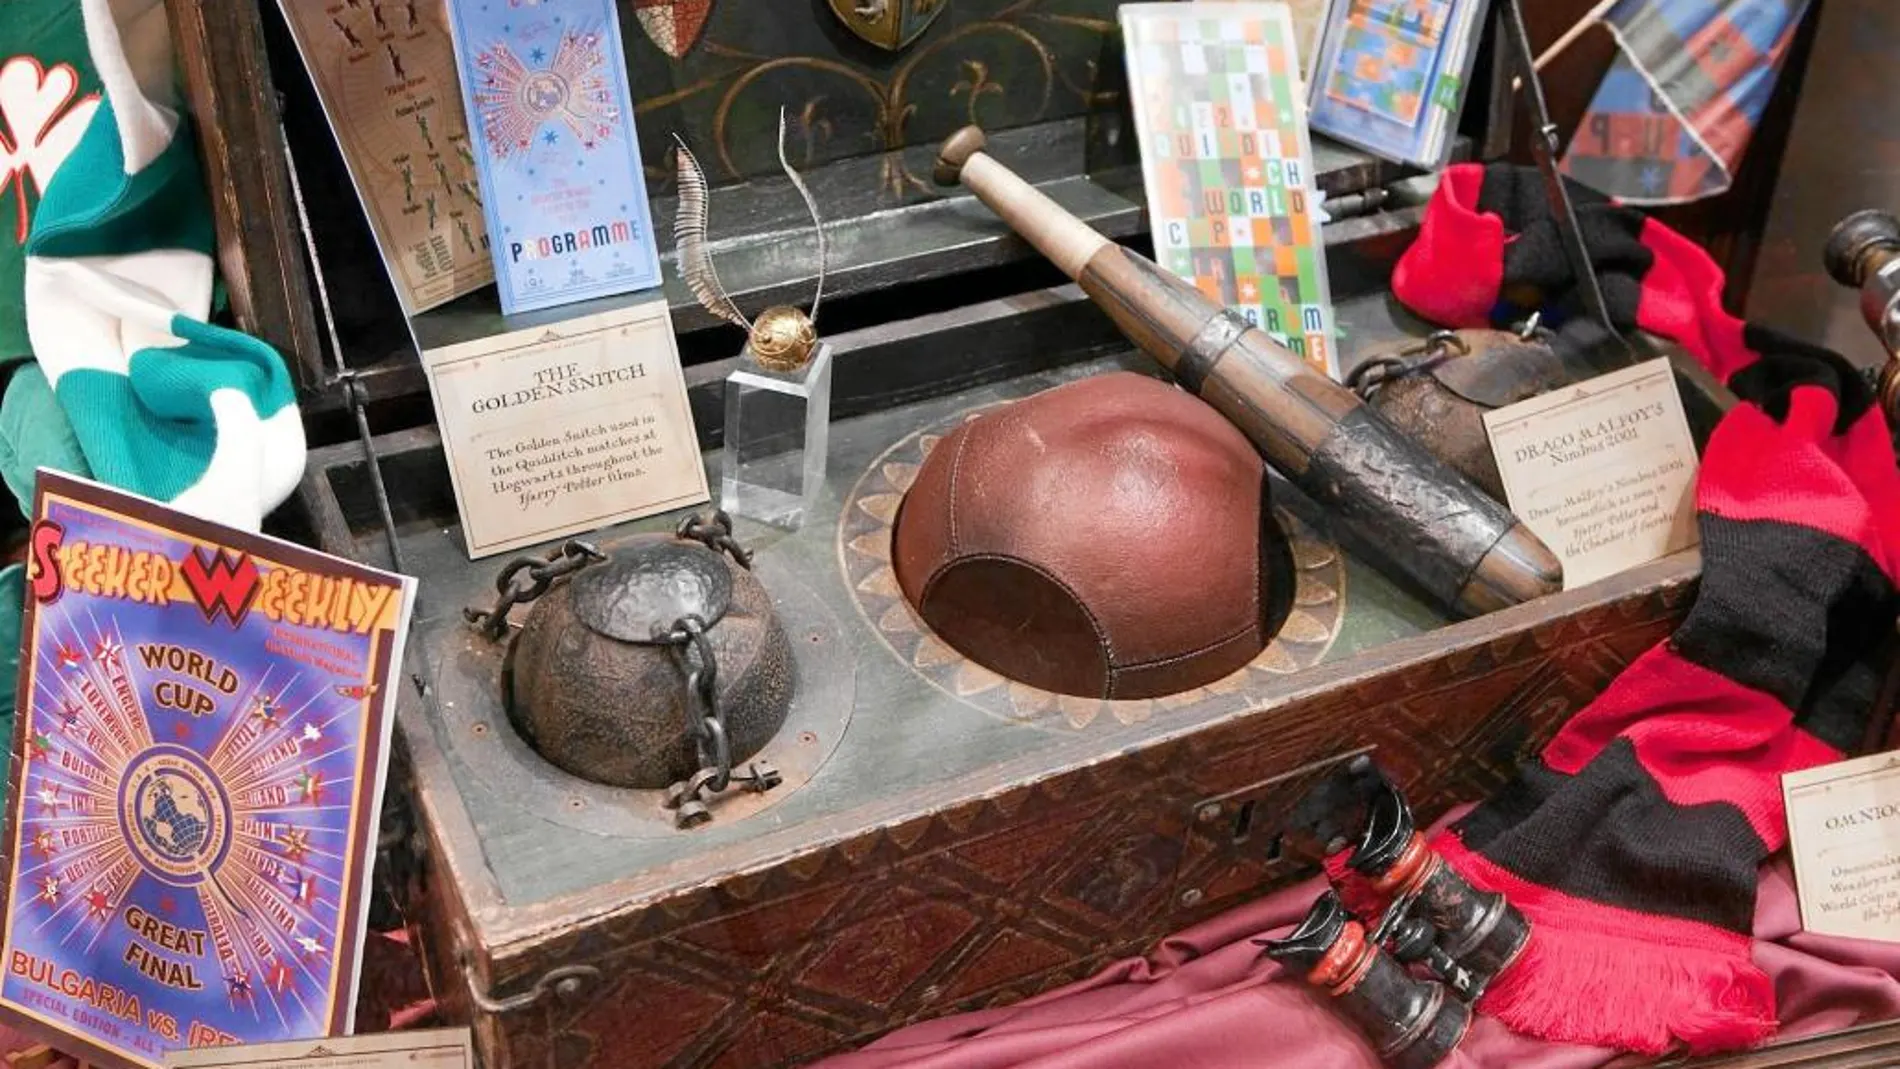 Pueden verse objetos tan emblemáticos como la pelota de Quidditchd